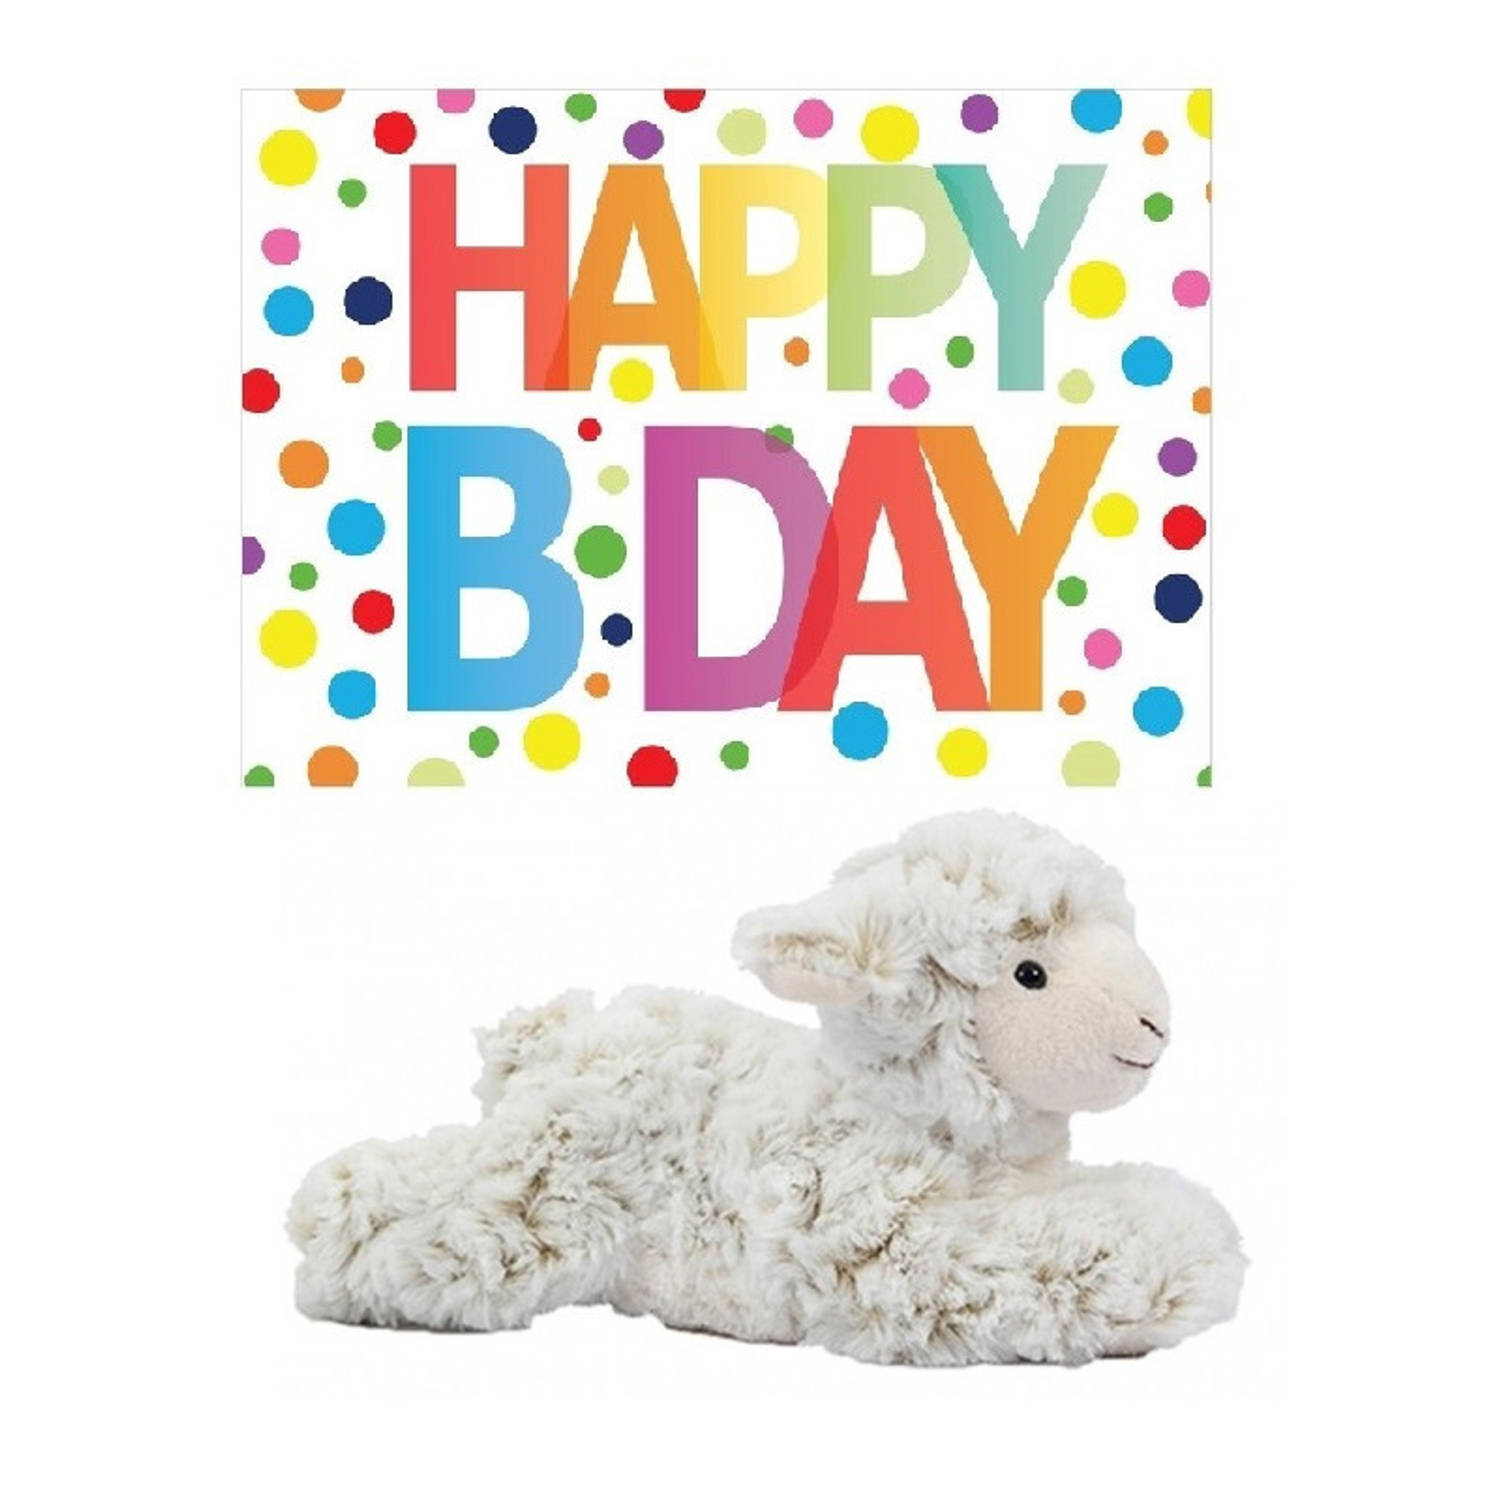 Pluche knuffel lammetje-schaap 22 cm met A5-size Happy Birthday wenskaart Knuffel boederijdieren